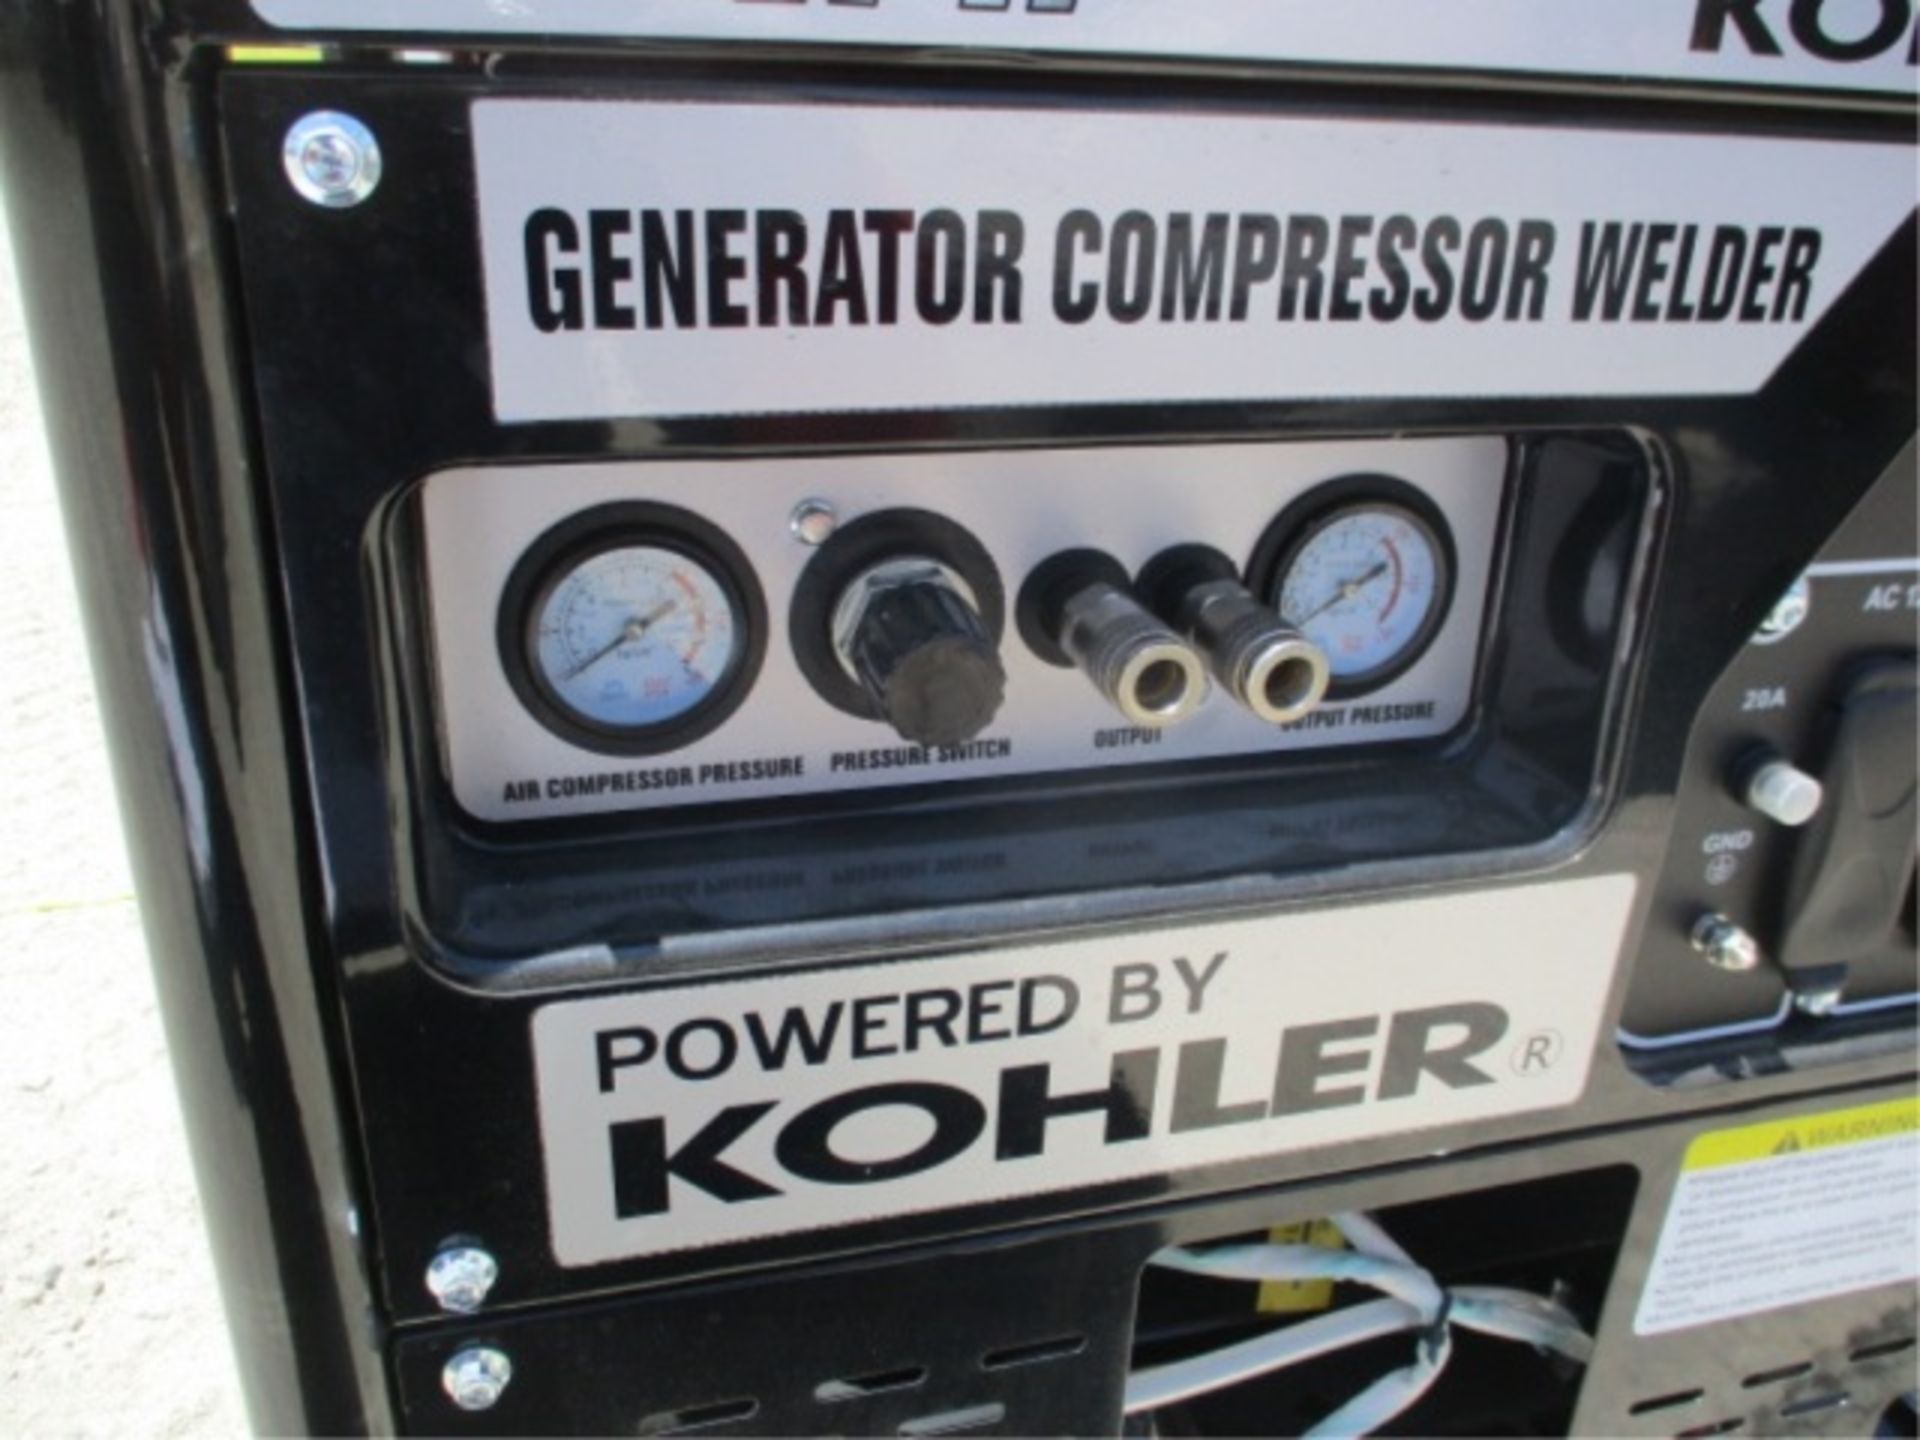 Kohler Command Pro III 9500 Generator Compressor, Welder, Gas Powered, S/N: 4919803918 - Image 19 of 28